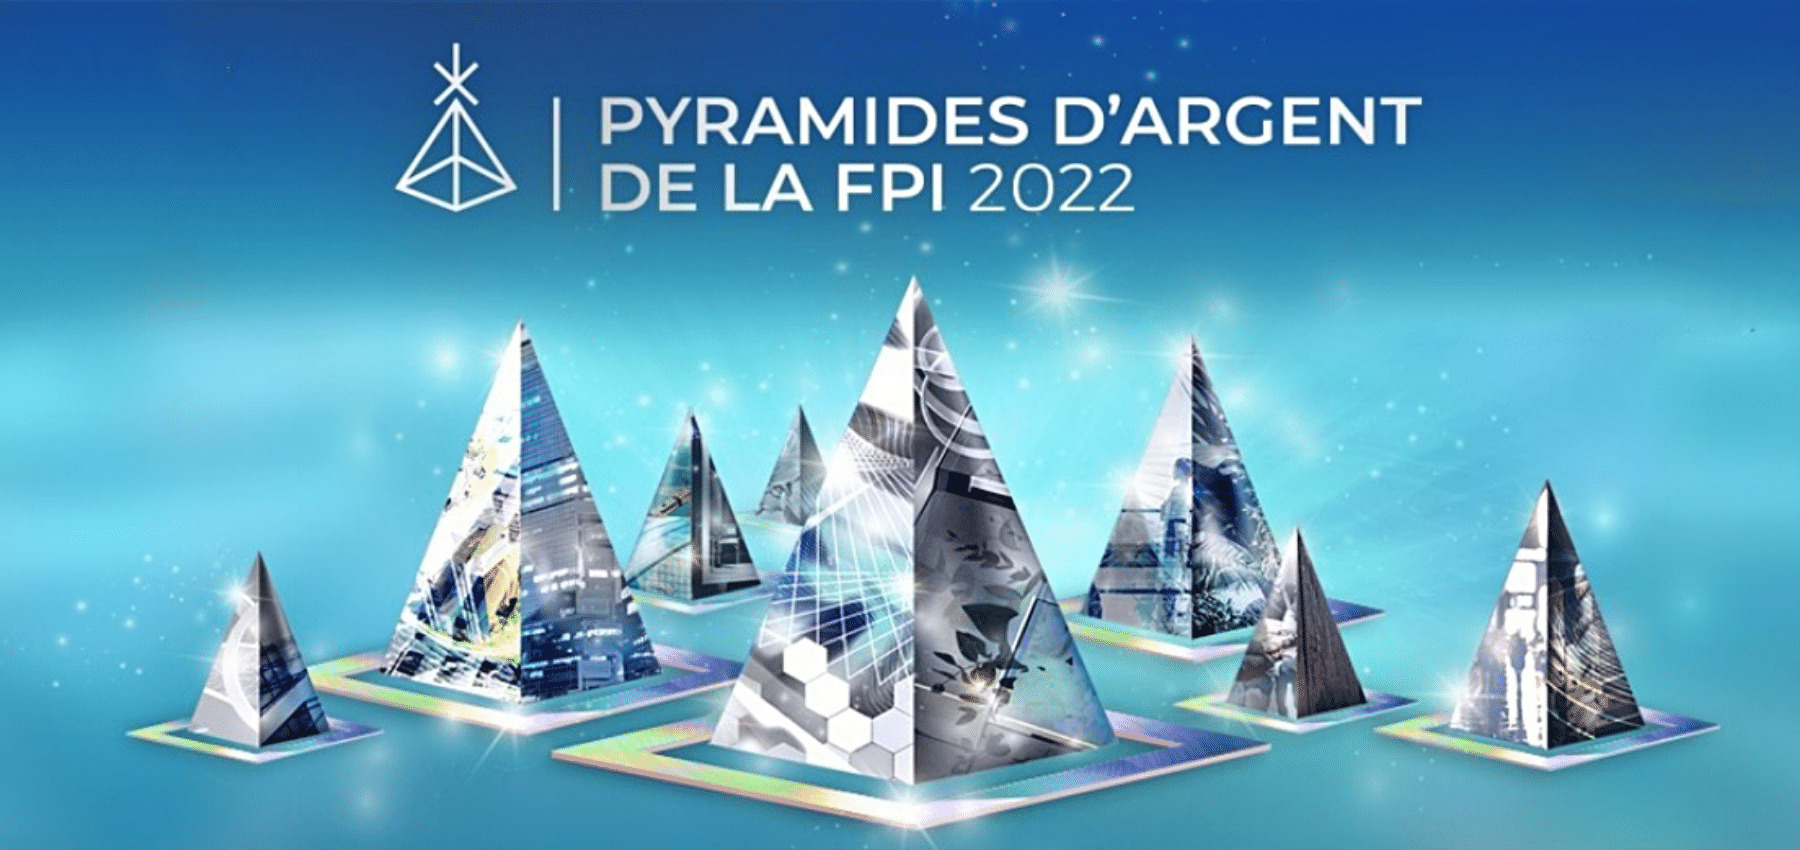 Actualité Pyramides d’argent 2022 : Les Jardins Sainte-Thérèse récompensés dans la catégorie Impact Sociétal